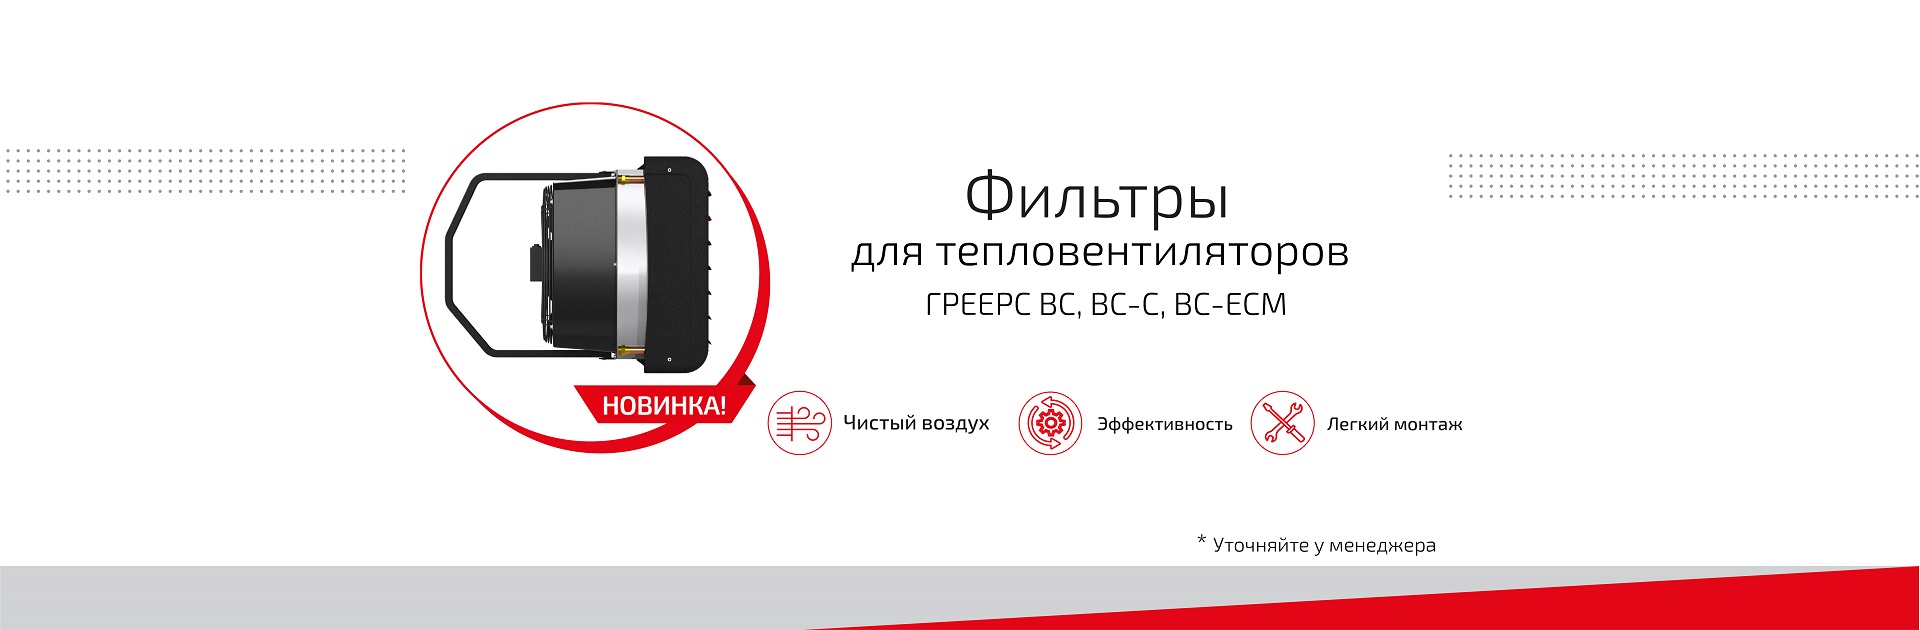 ГРЕЕРС - российский производитель тепловентиляционного оборудования